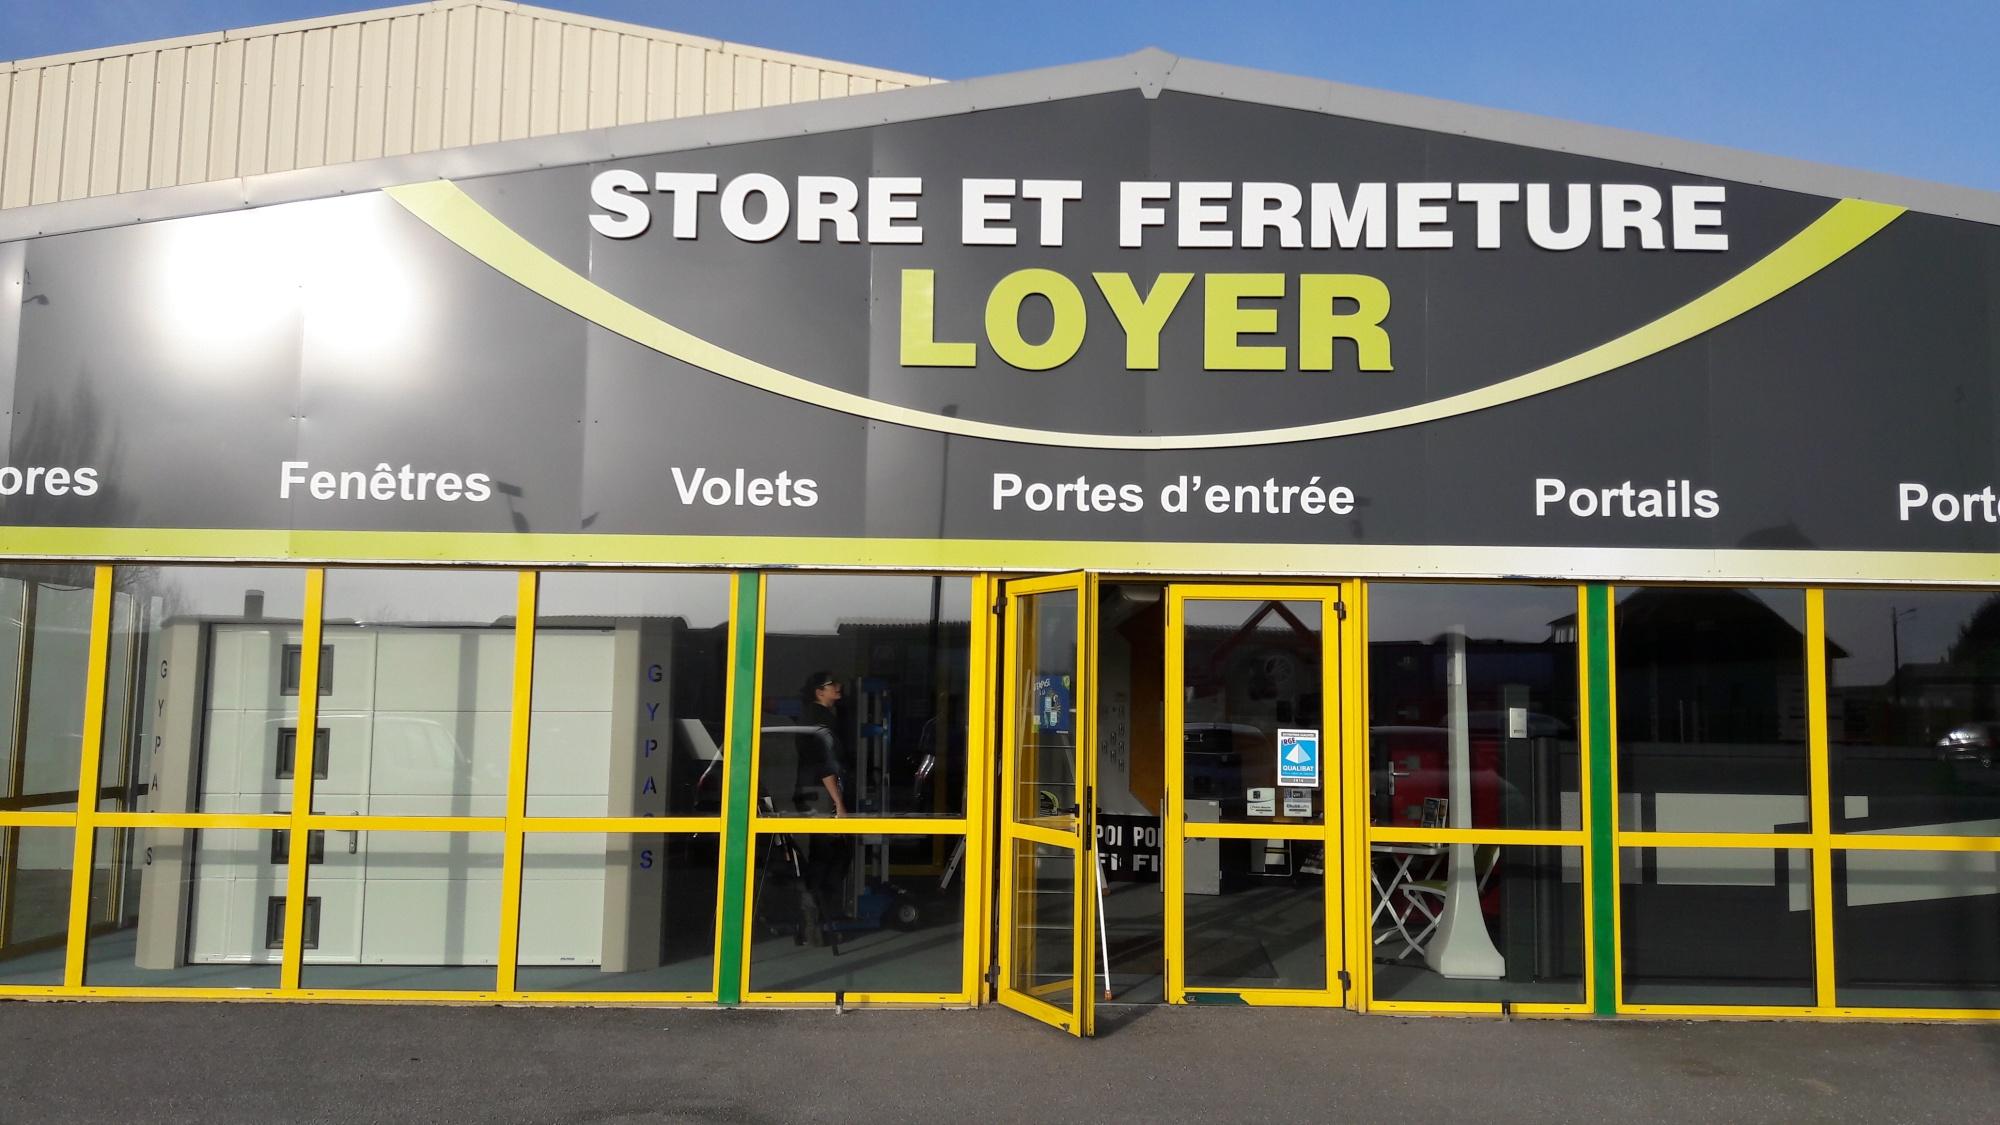 Store Et Fermeture Loyer - Point Fort Fichet Condé Sur Sarthe